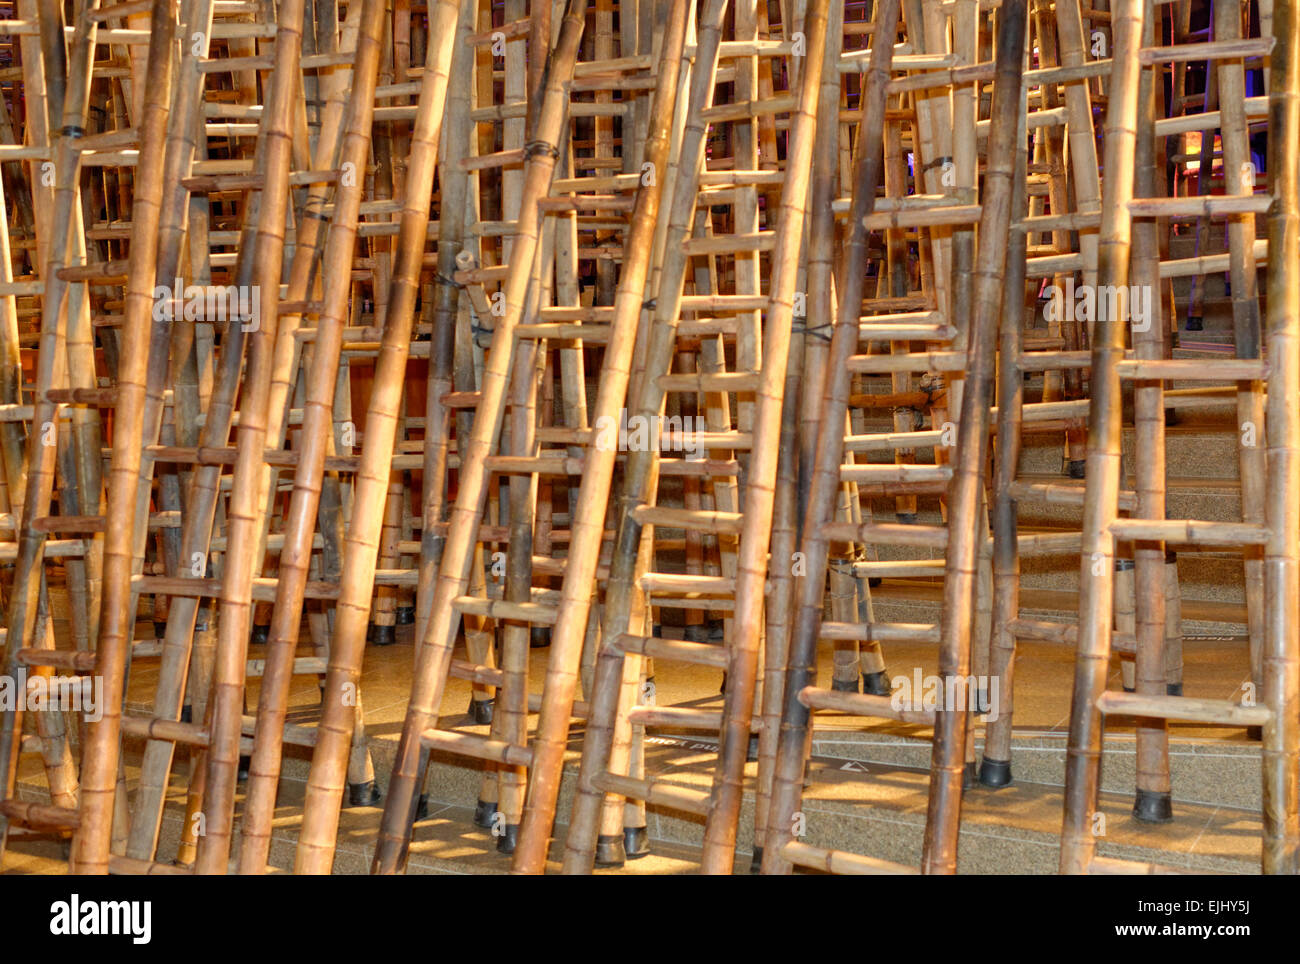 Exposition d'Art moderne de l'affichage des échelles de bambou et de la lumière, l'Esplanade Opera House, Singapour Banque D'Images